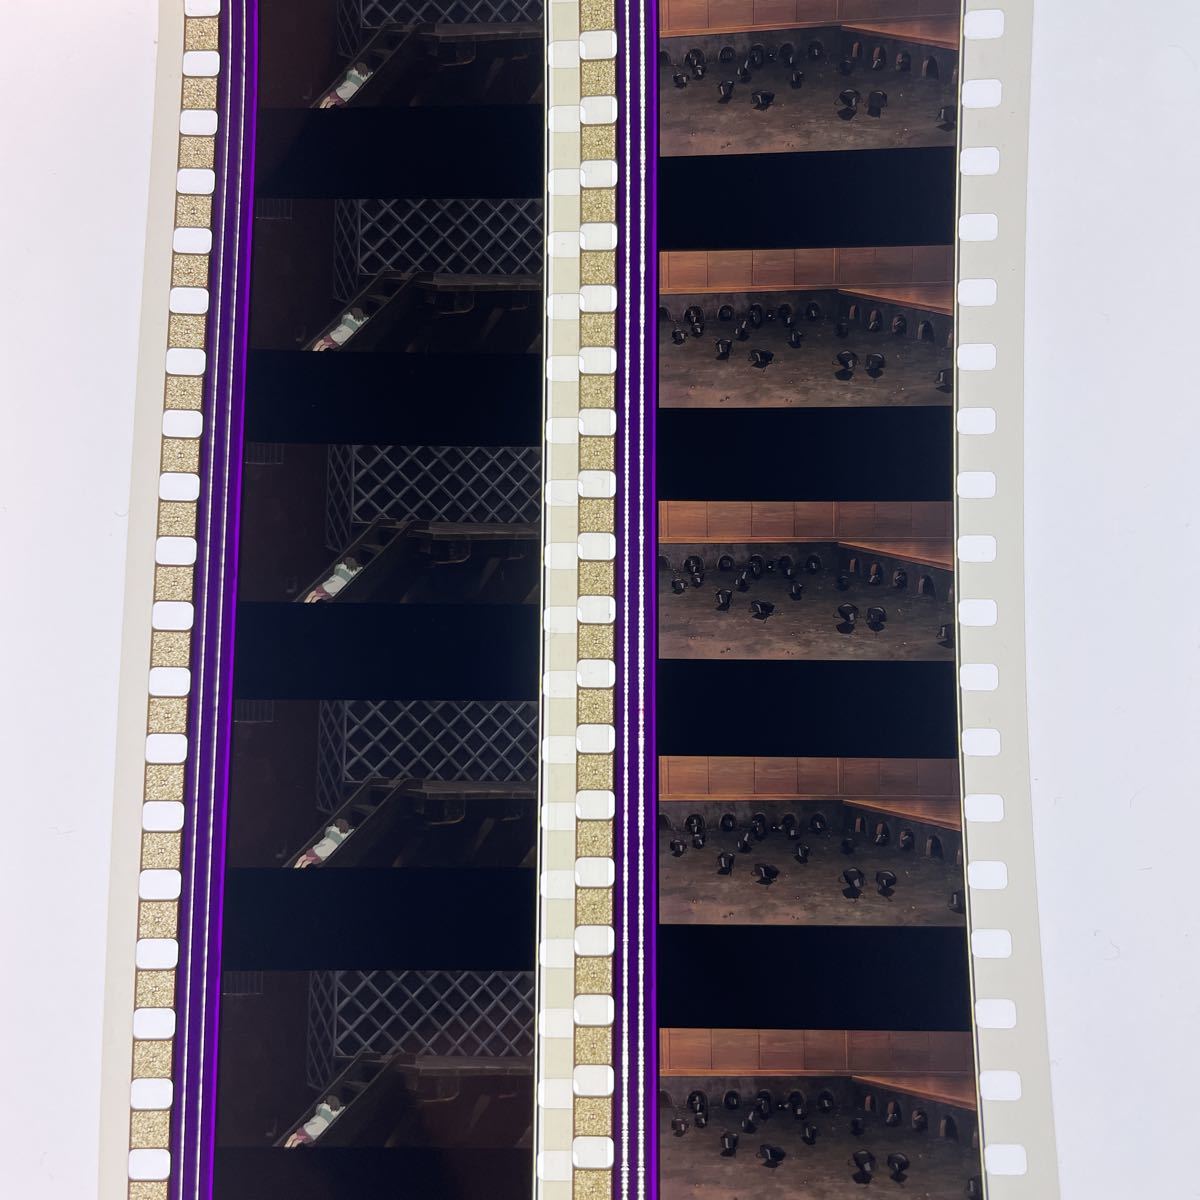 千と千尋の神隠し スタジオジブリ 35mm 6コマ 映画フィルム 10枚 宮崎 